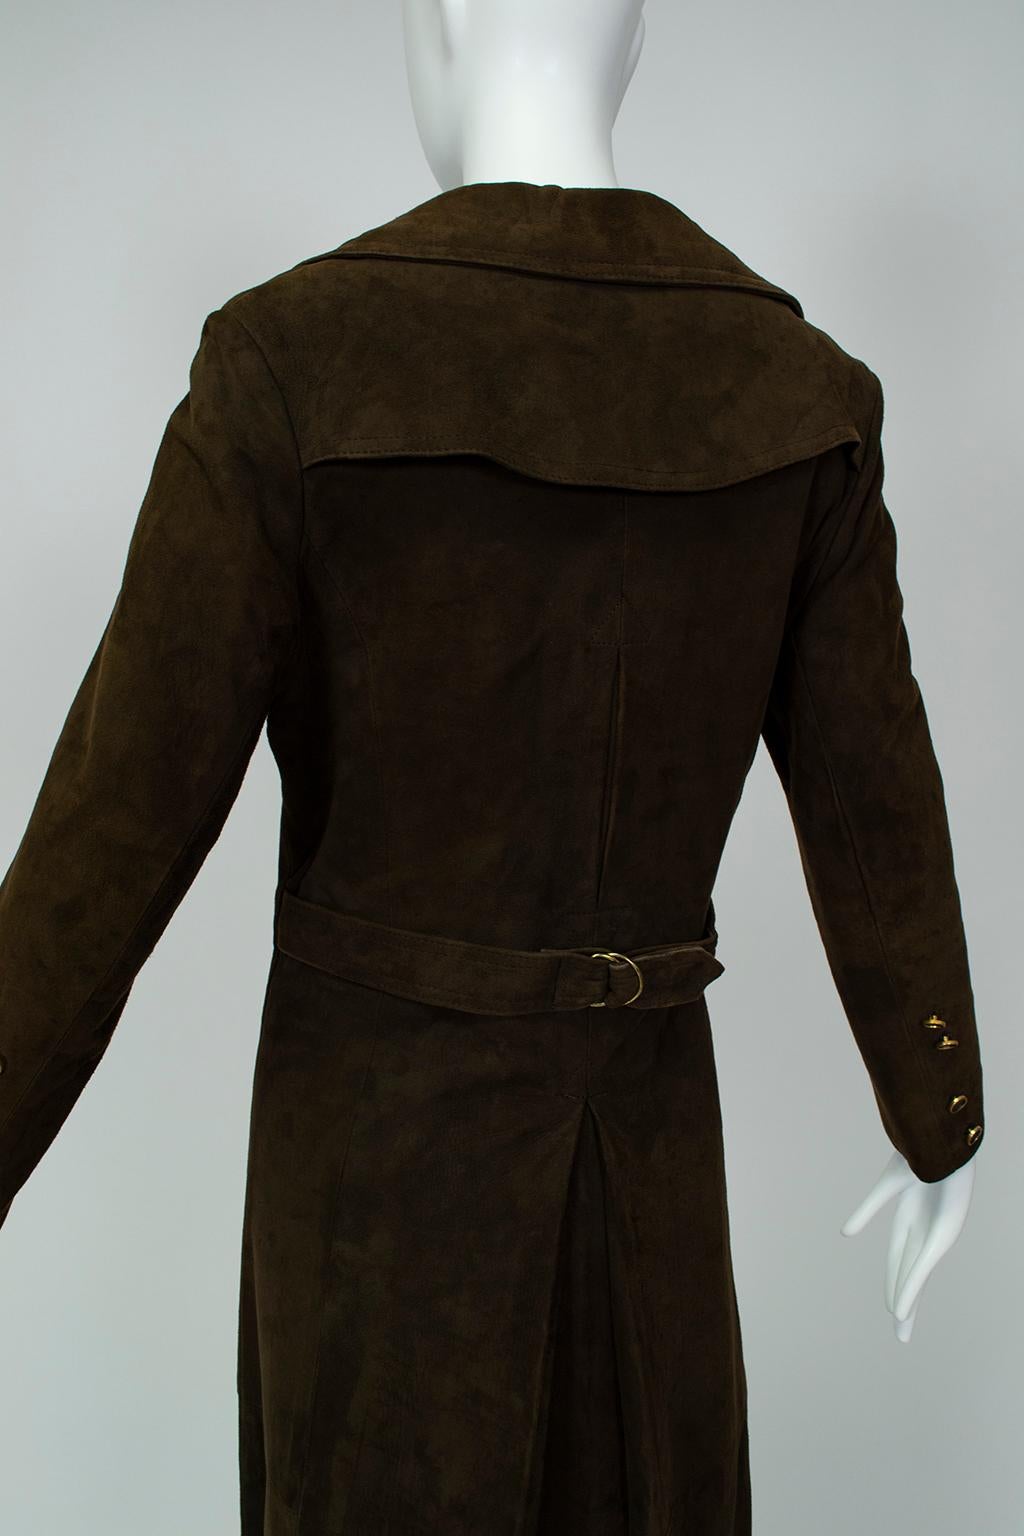 Trench-coat princesse militaire en daim marron chocolat à pleine longueur, taille S-M, années 1970 en vente 1